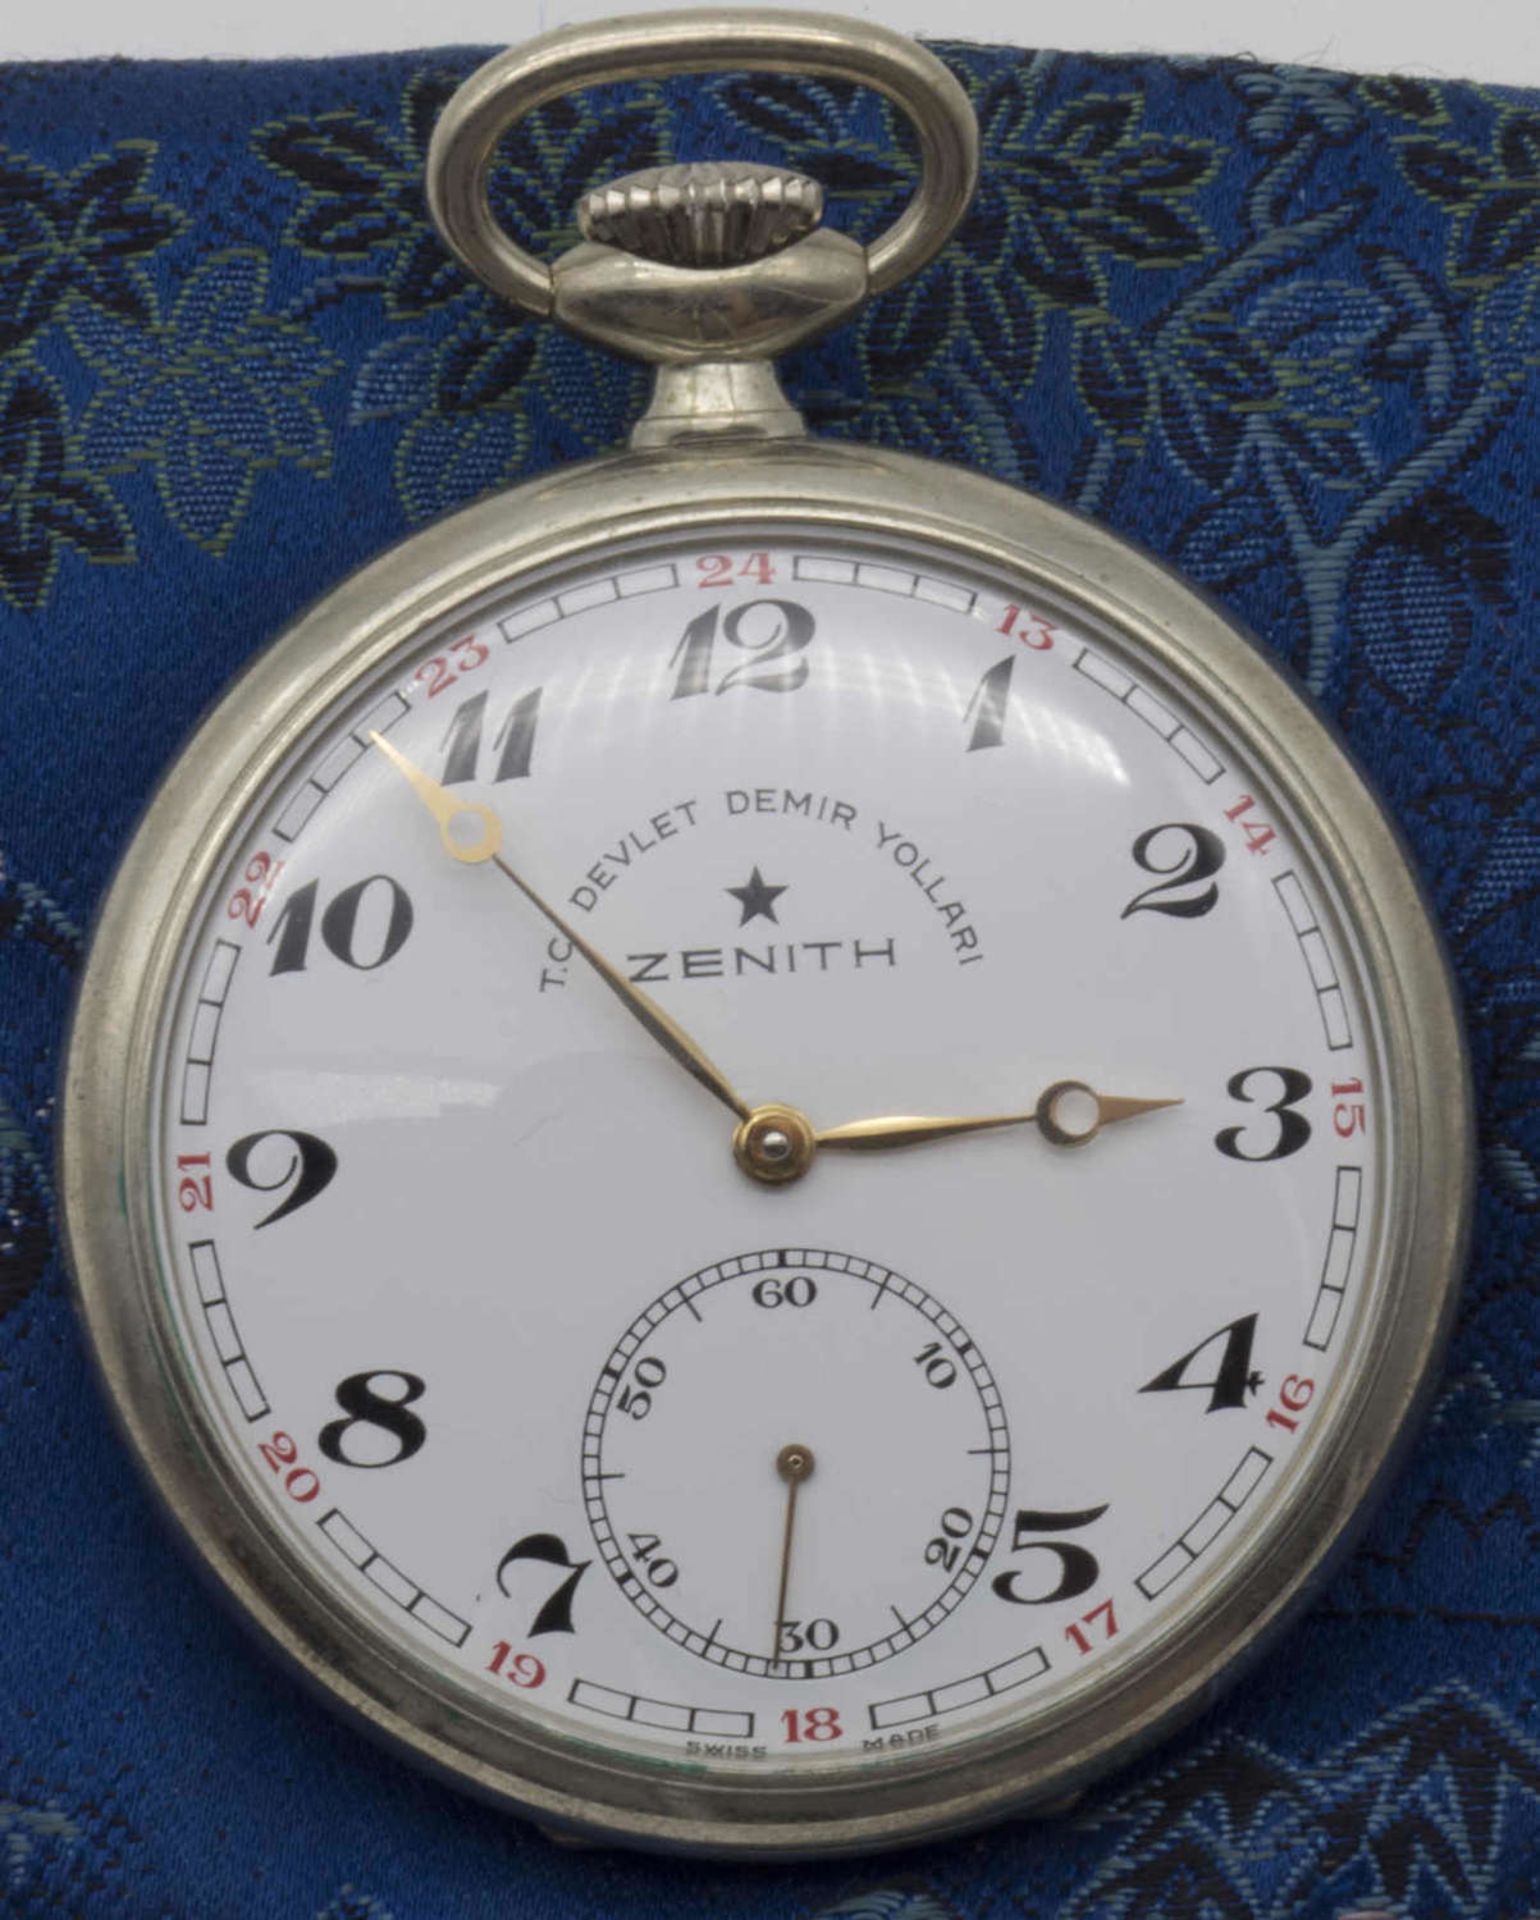 Zenith Türkische Eisenbahner Taschenuhr. Die Uhr läuft an.Zenith Turkish Railwayman pocket watch. - Bild 2 aus 2